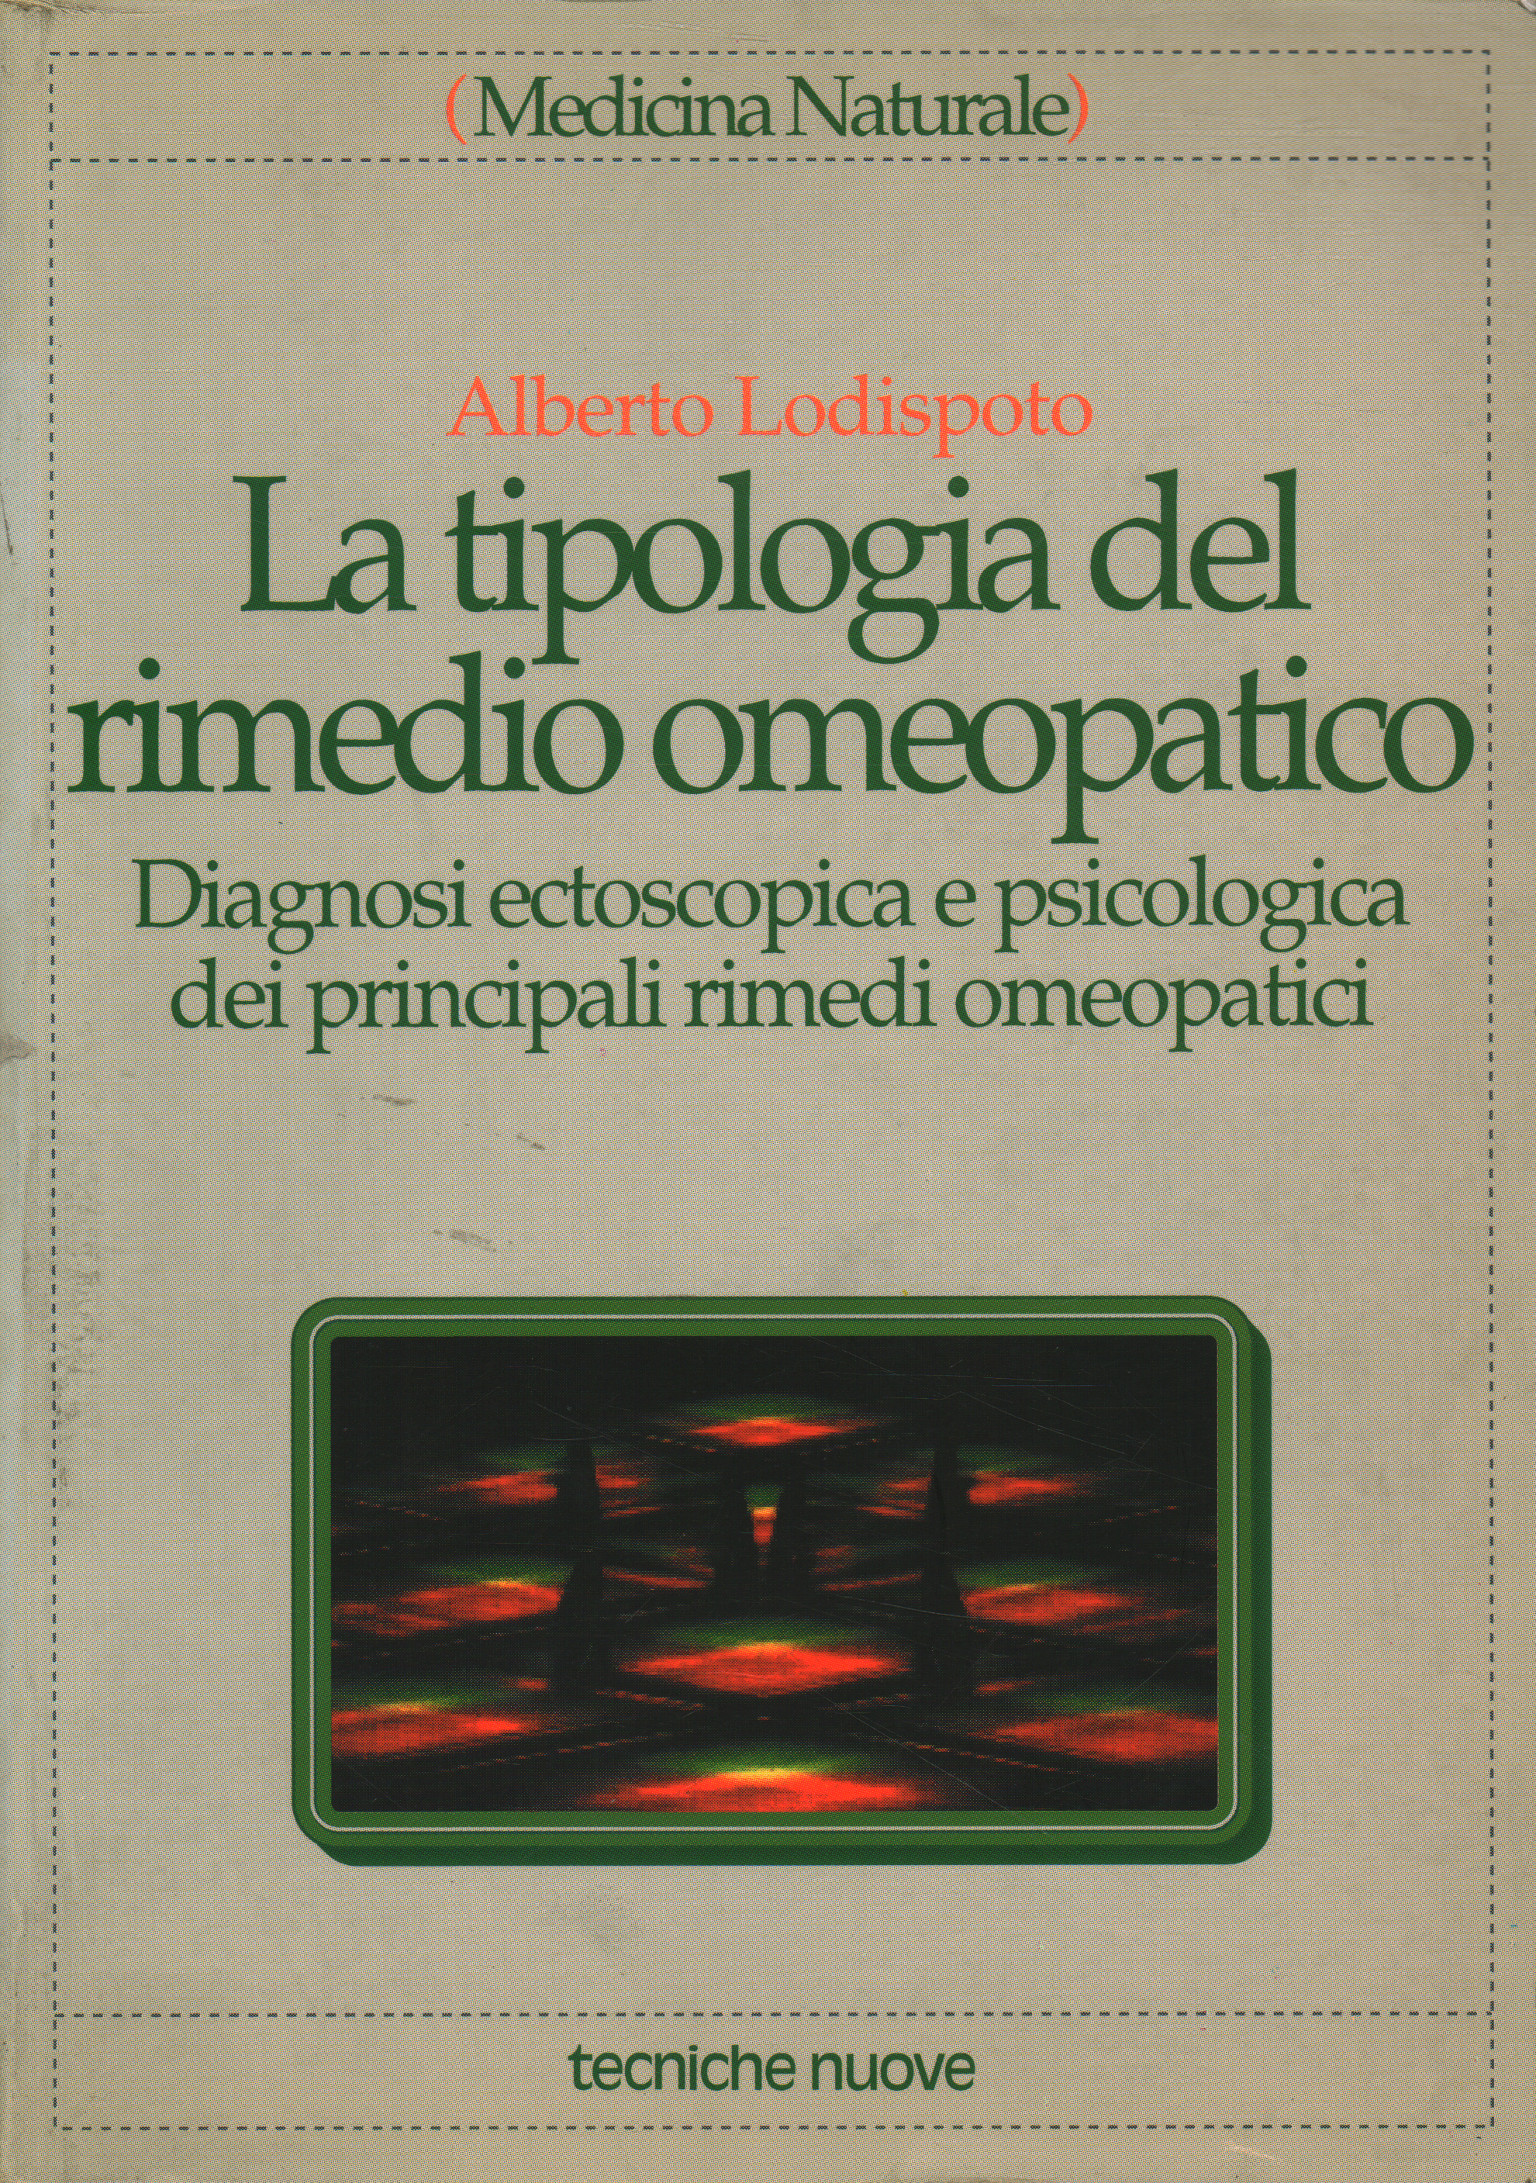 El tipo de remedio homeopático, Alberto Lodispoto